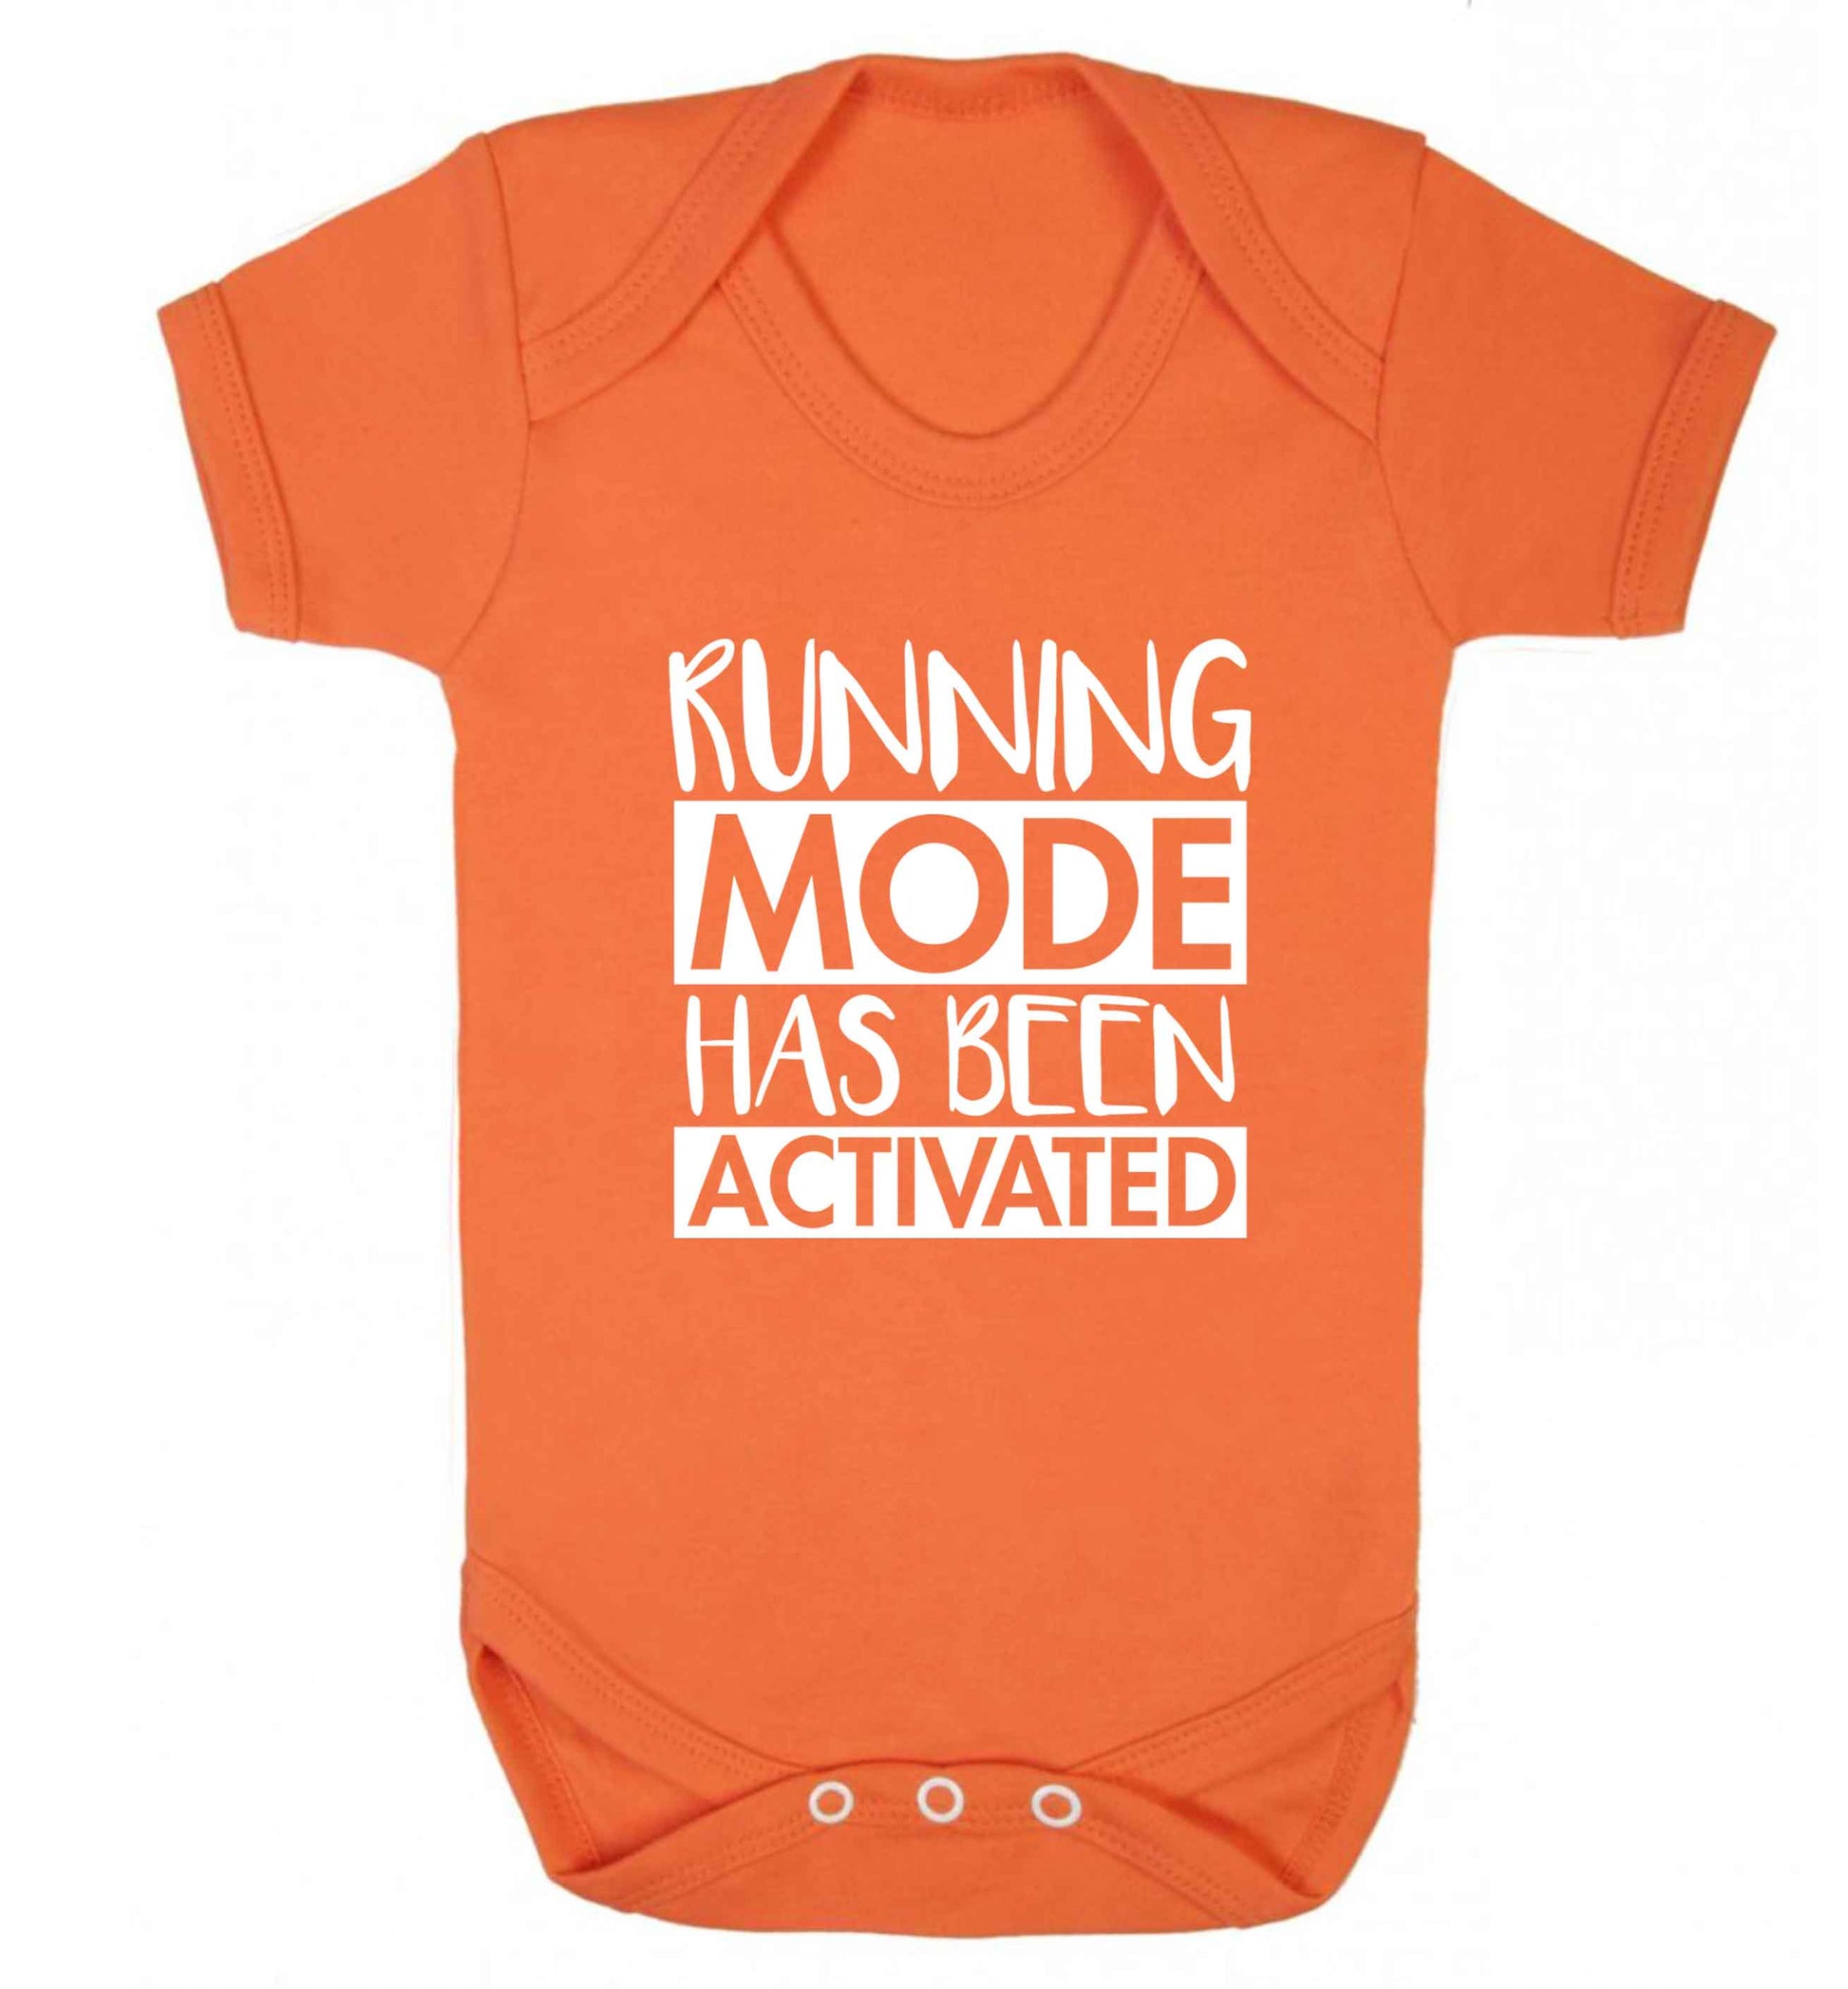 Running mode has been activated baby vest orange 18-24 months